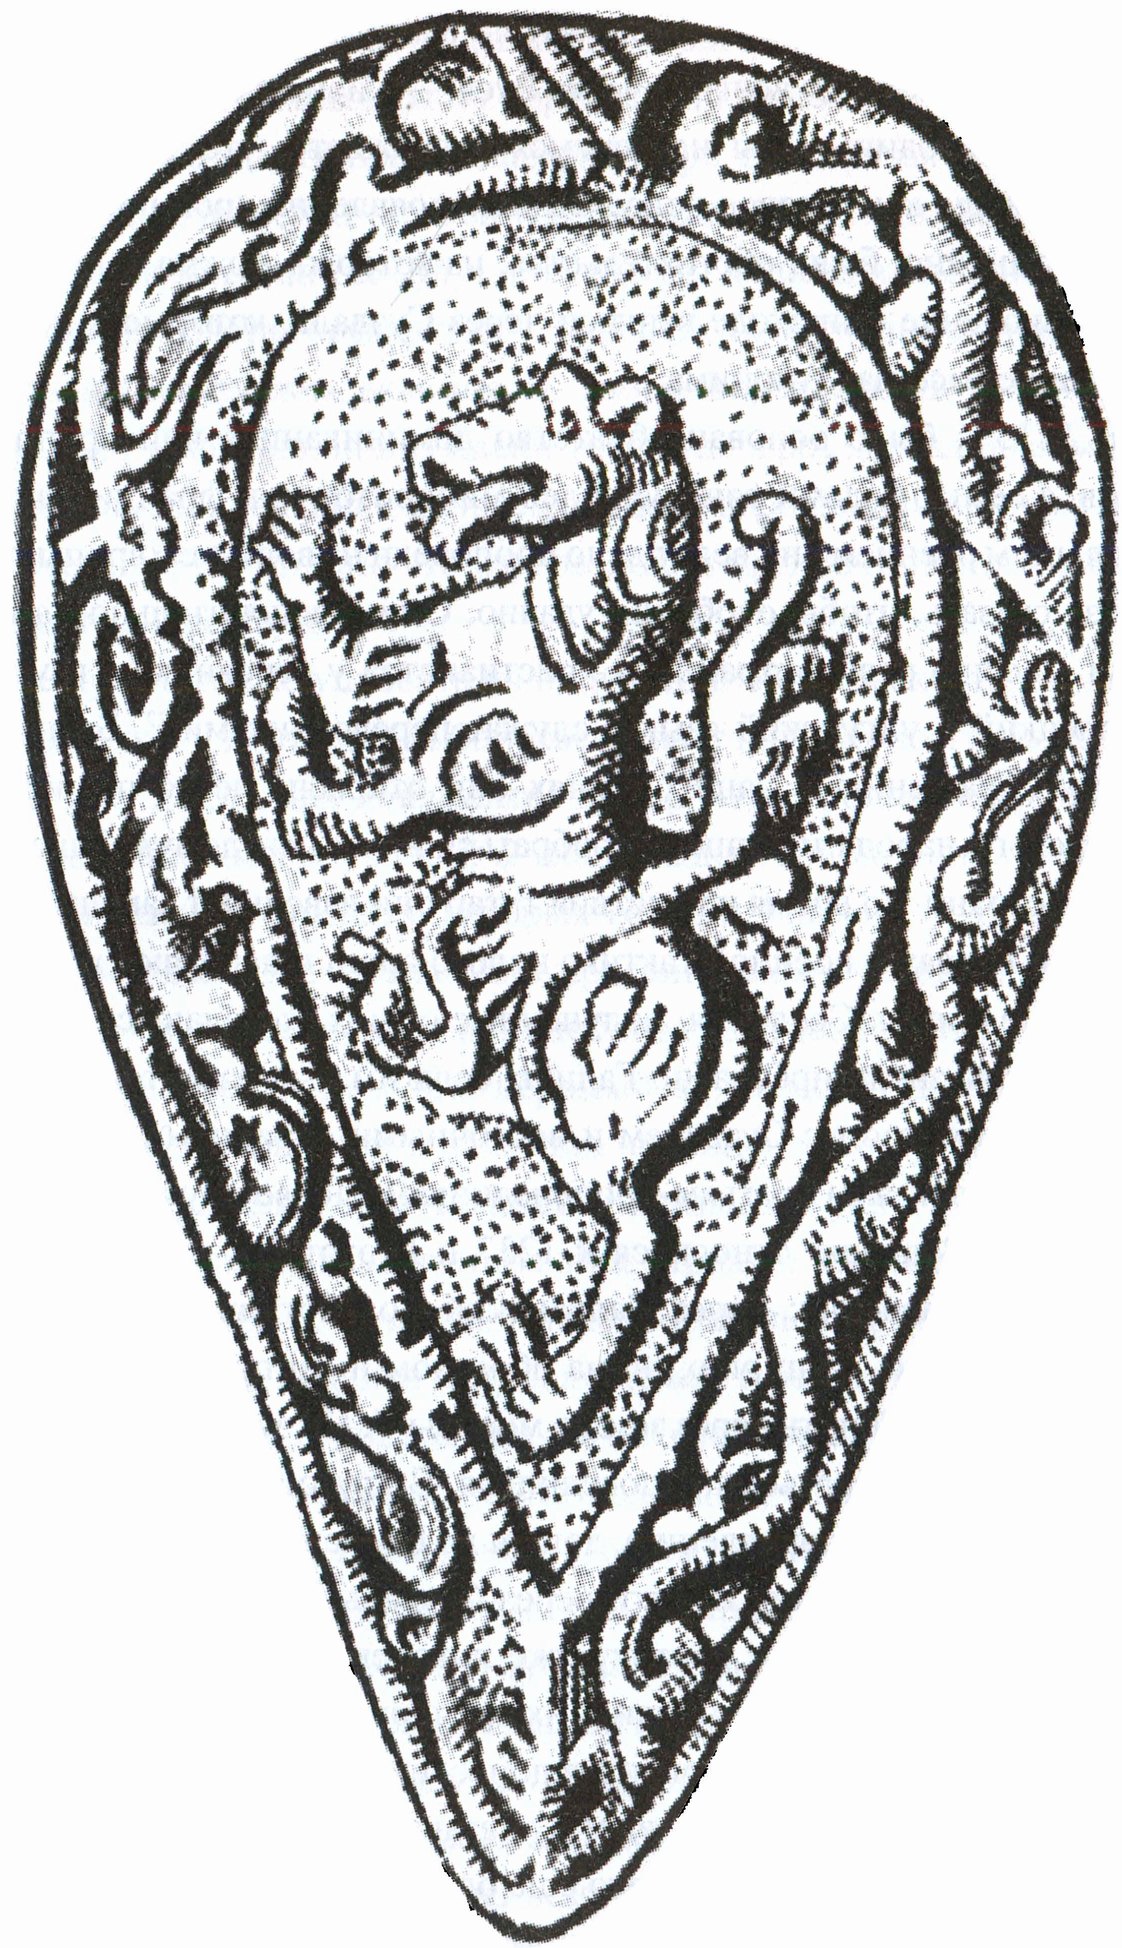 Герб владимиро-суздальских князей. XI—XIII вв